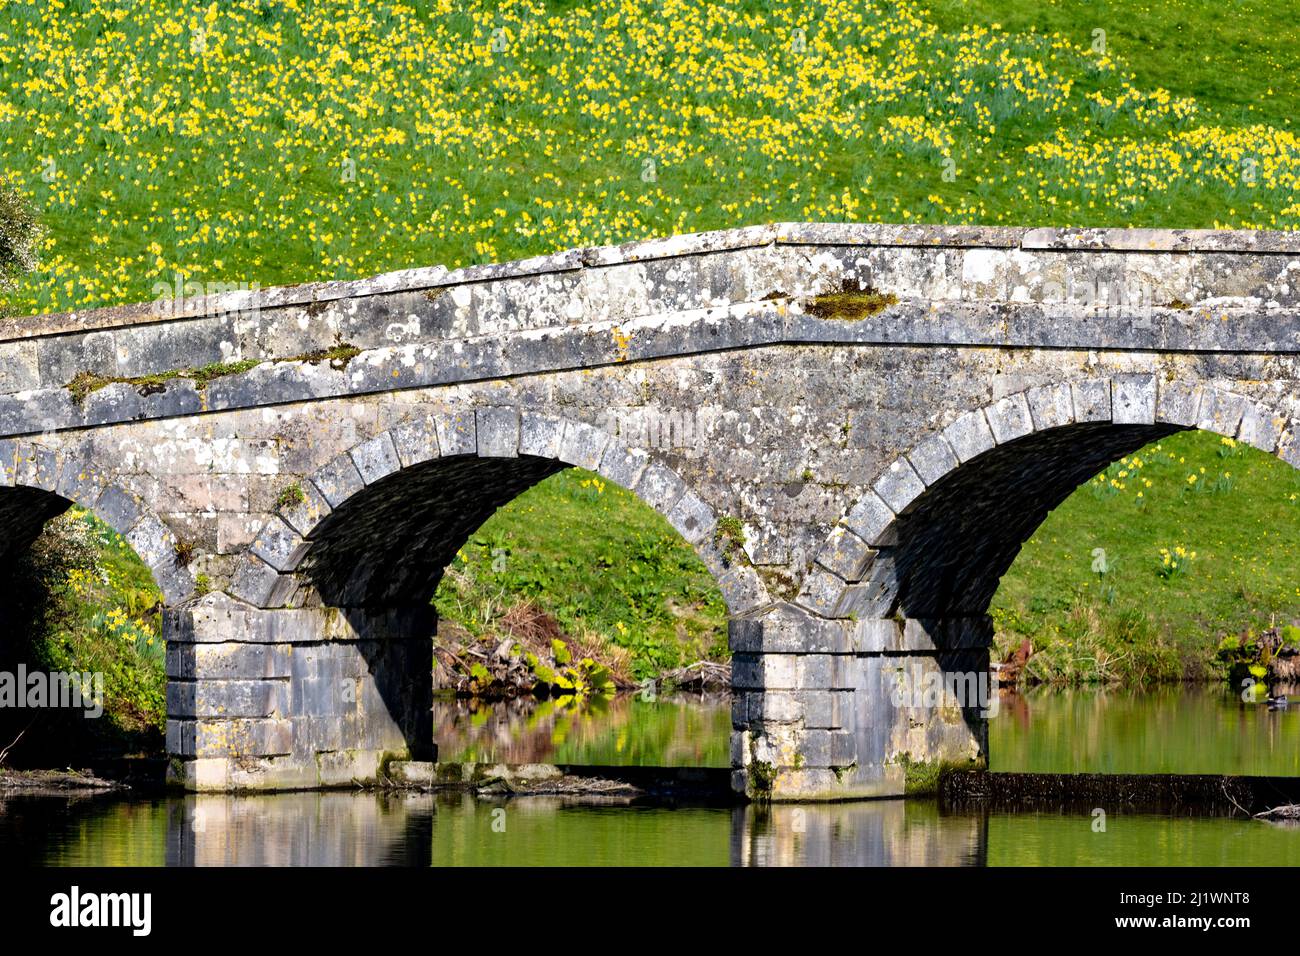 Palladium style bridge over the lake at Stourhead gardens, Stourton, Wiltshire, UK Stock Photo